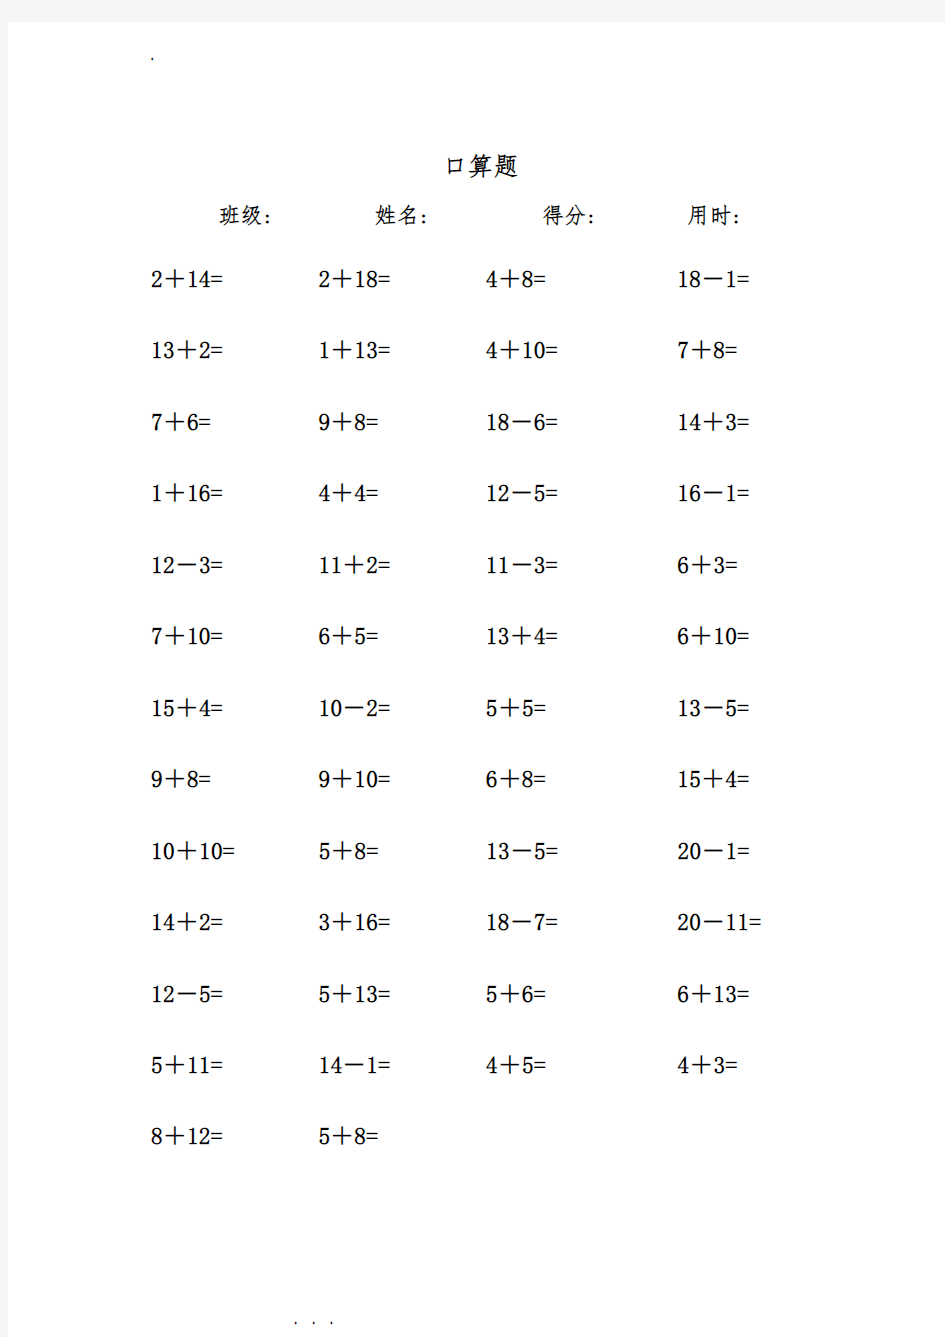 一年级数学练习题_20以内加减法口算题(每页50道)直接打印版